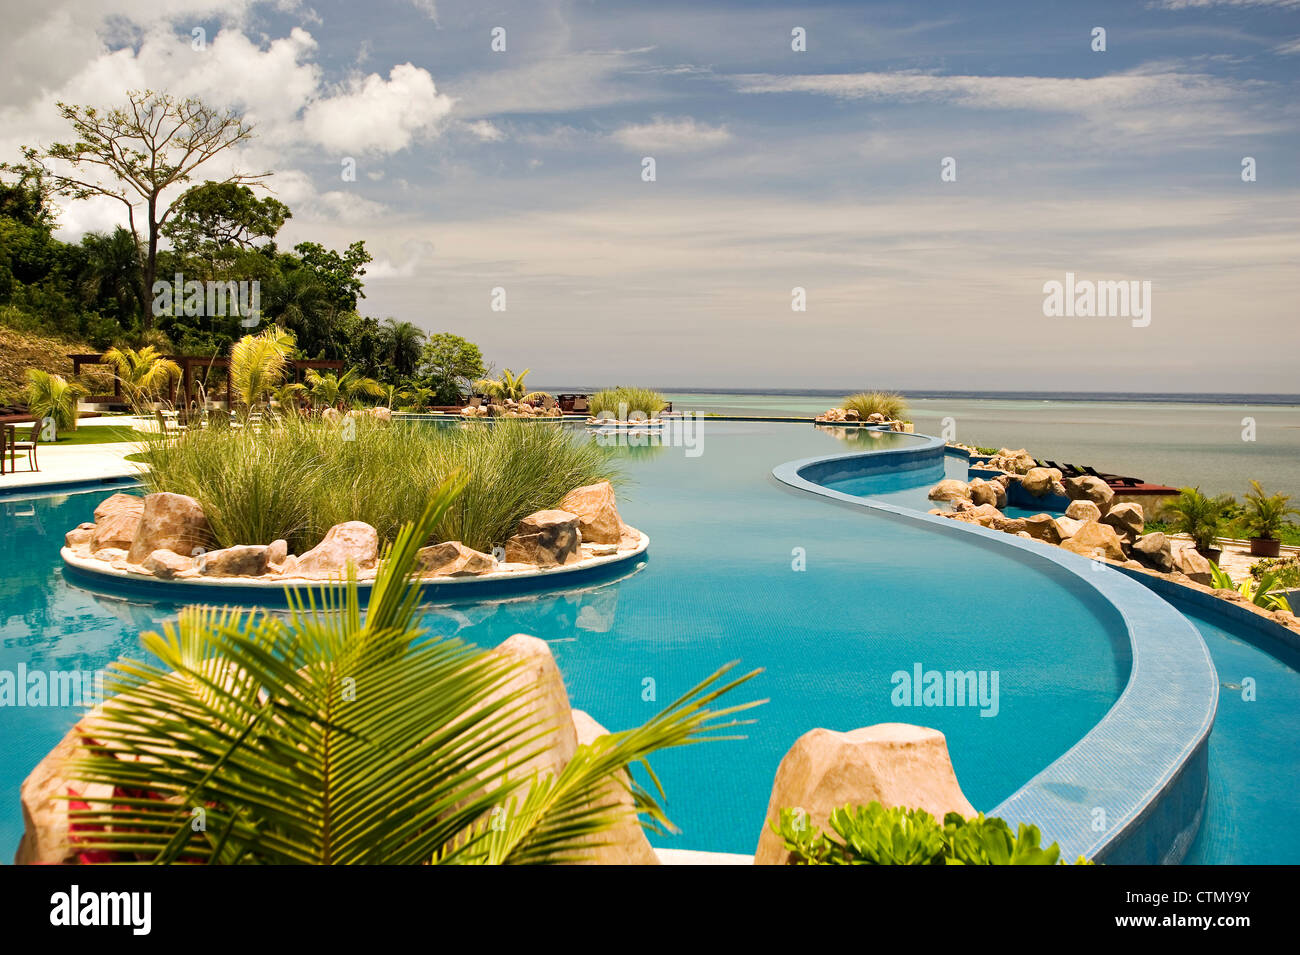 Pristine Bay Resort, Roatan, Honduras Stock Photo